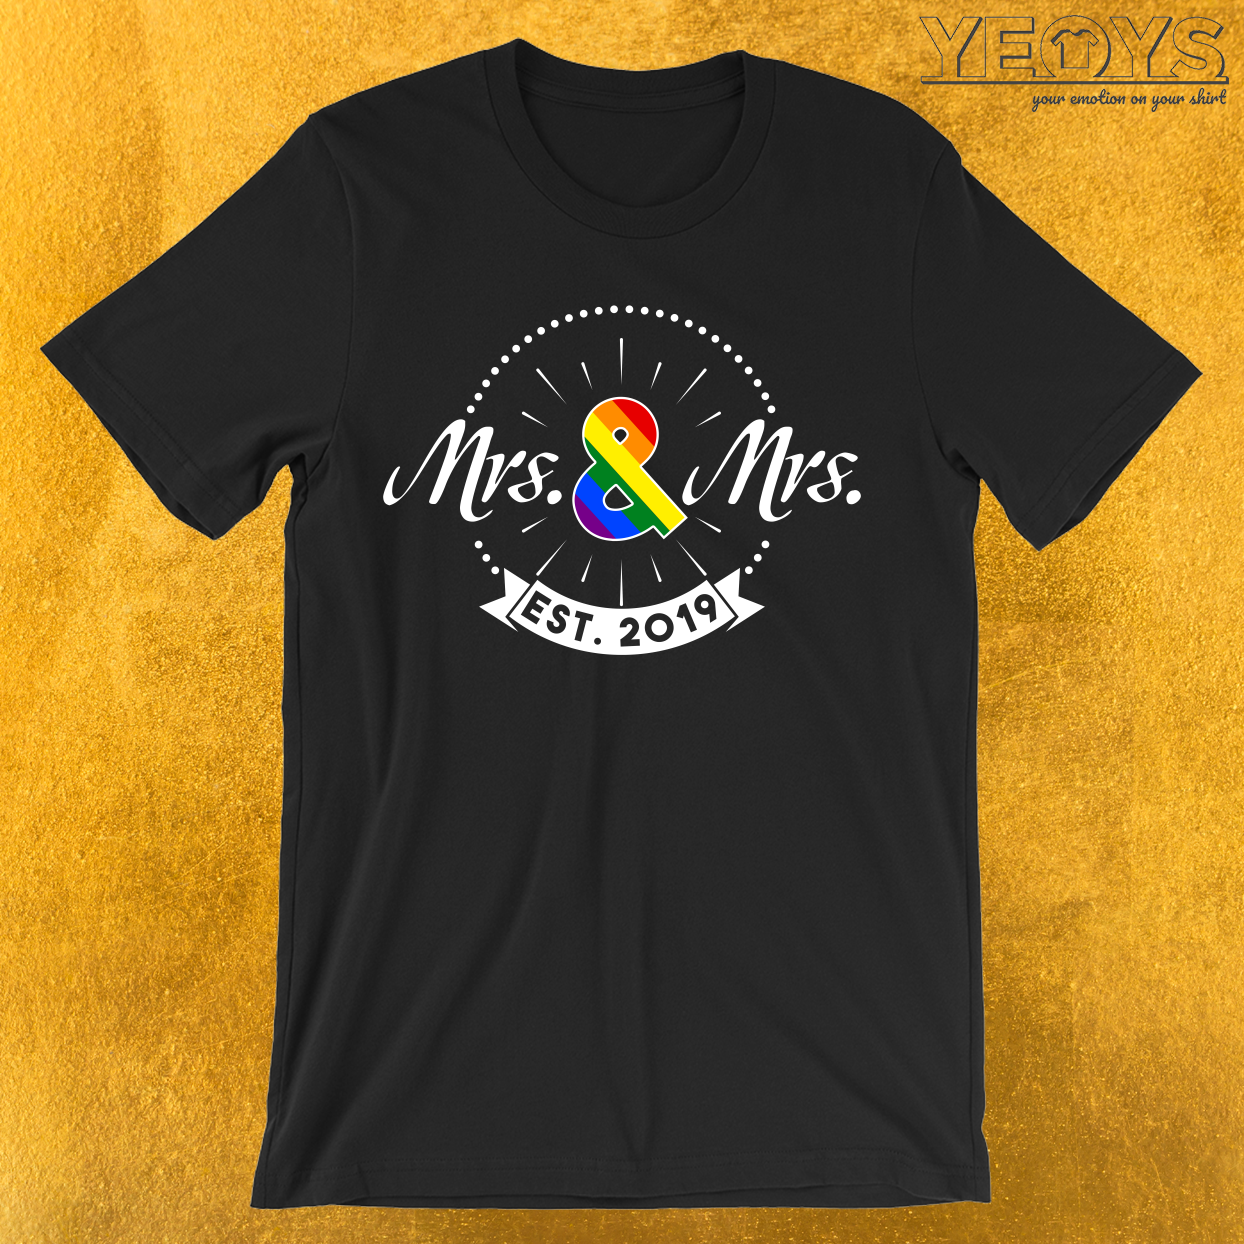 Mrs. & Mrs. est. 2019 T-Shirt